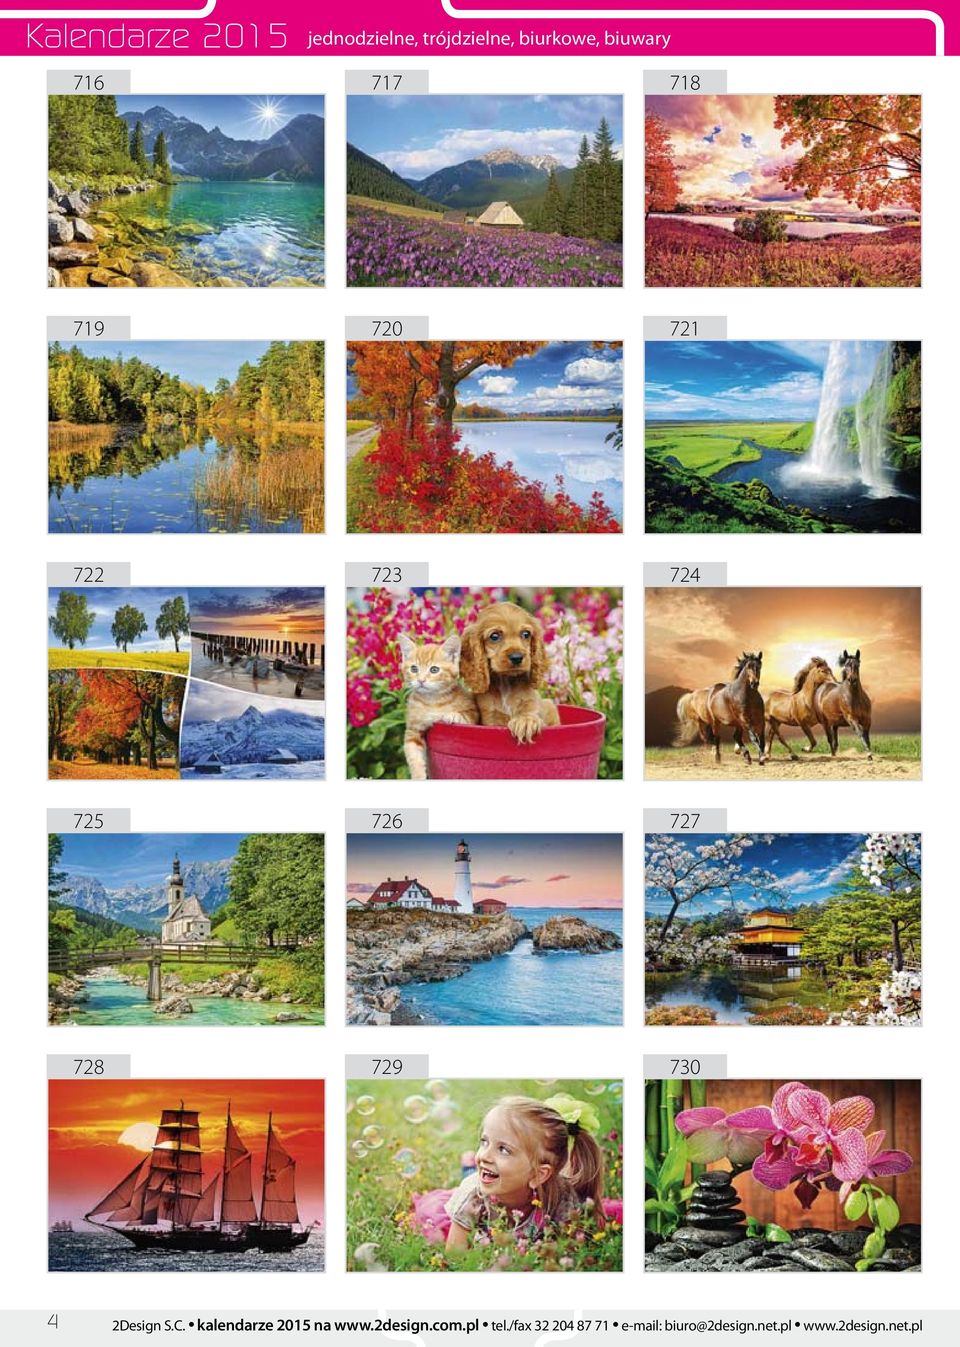 2Design S.C. kalendarze 2015 na www.2design.com.pl tel.